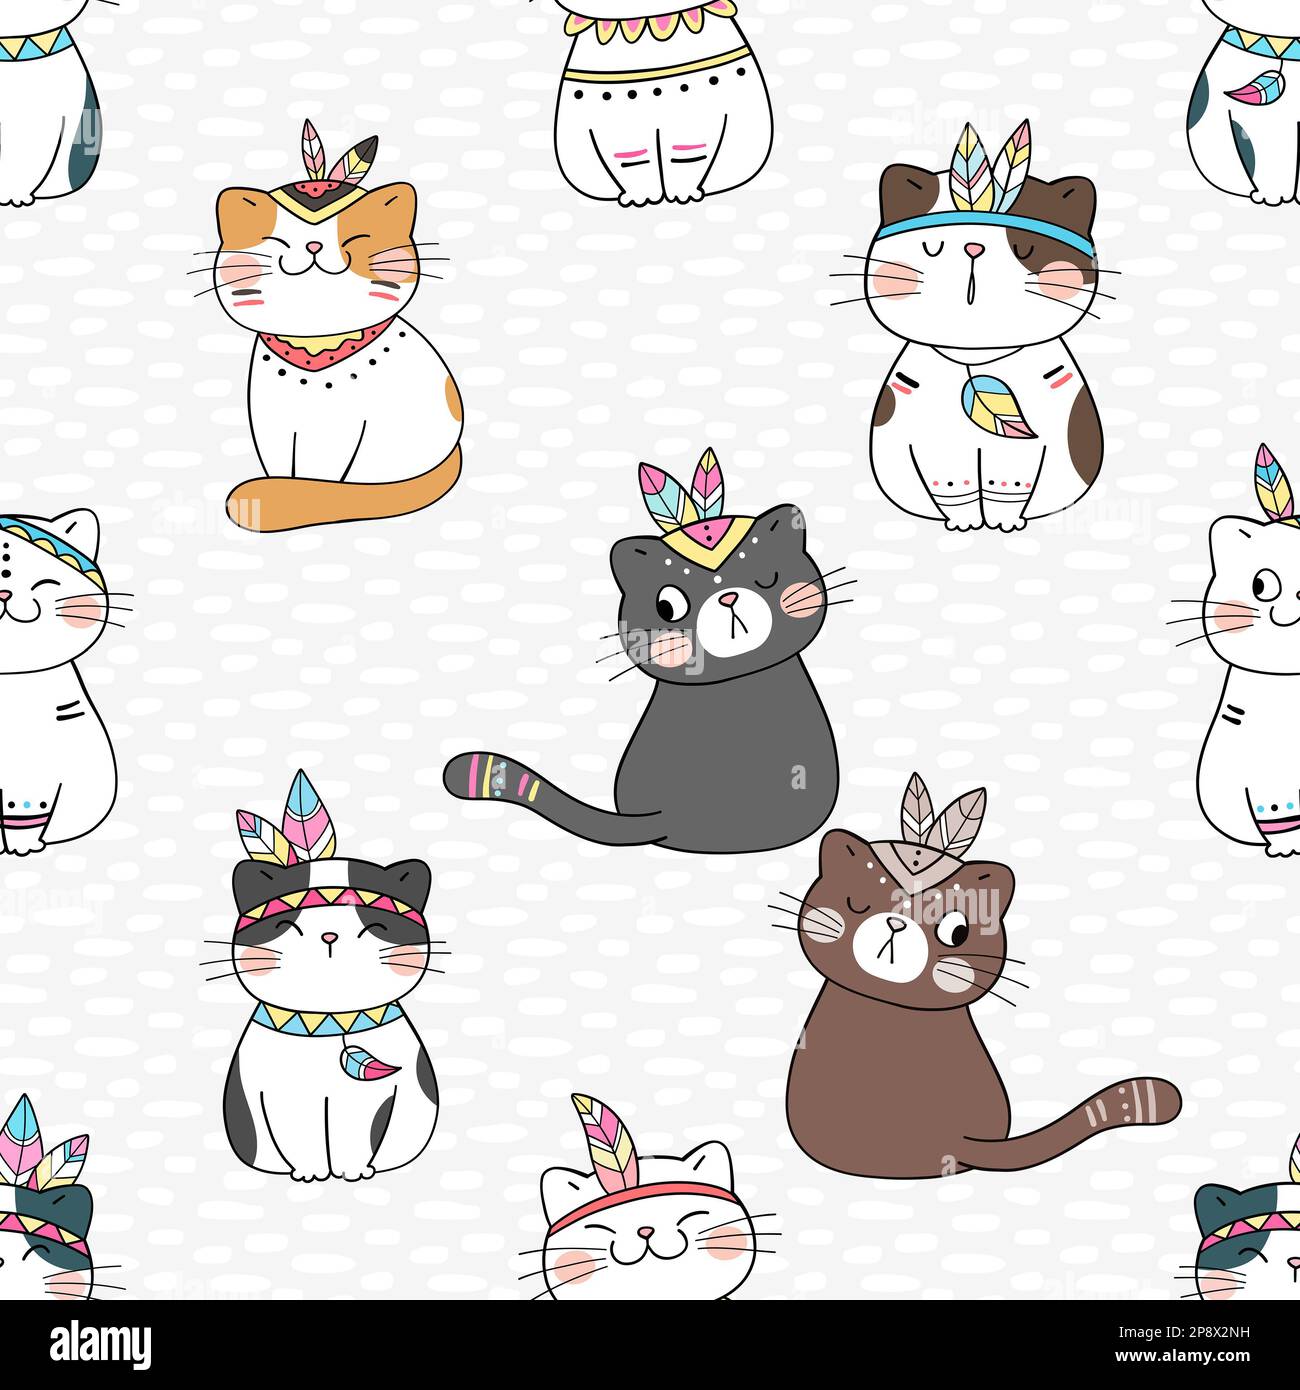 Fotos de perfil soft✨  Cat icon, Cute baby cats, Cute cats